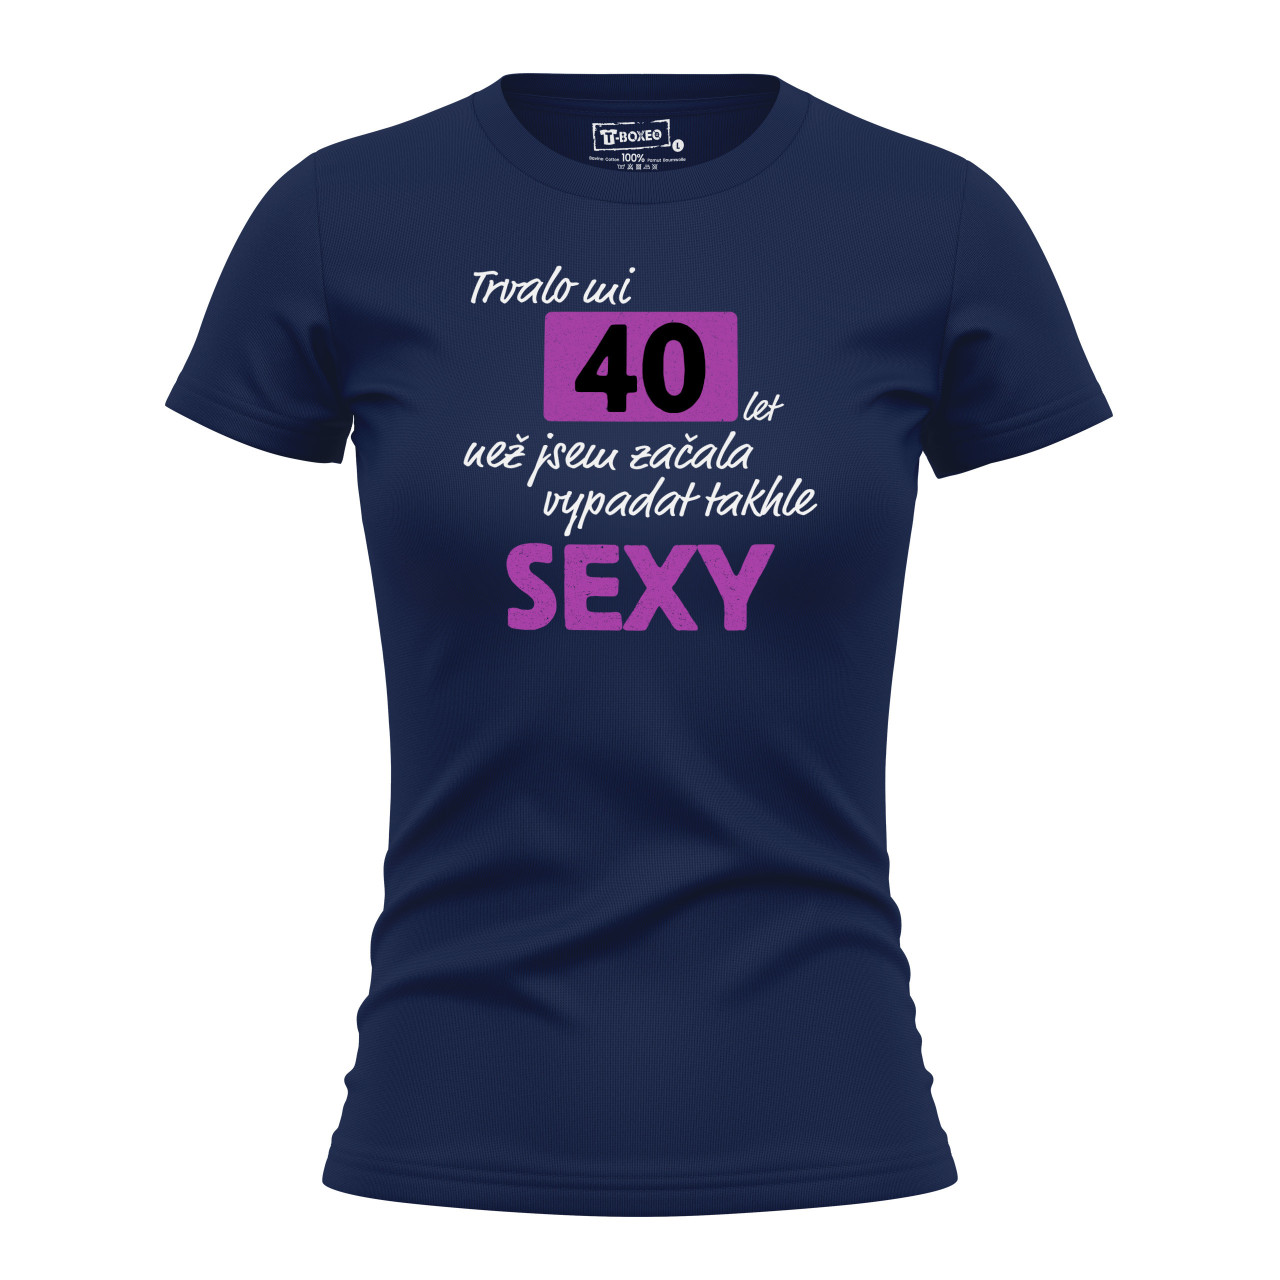 Dámské tričko s potiskem “Trvalo mi..sexy” s věkem